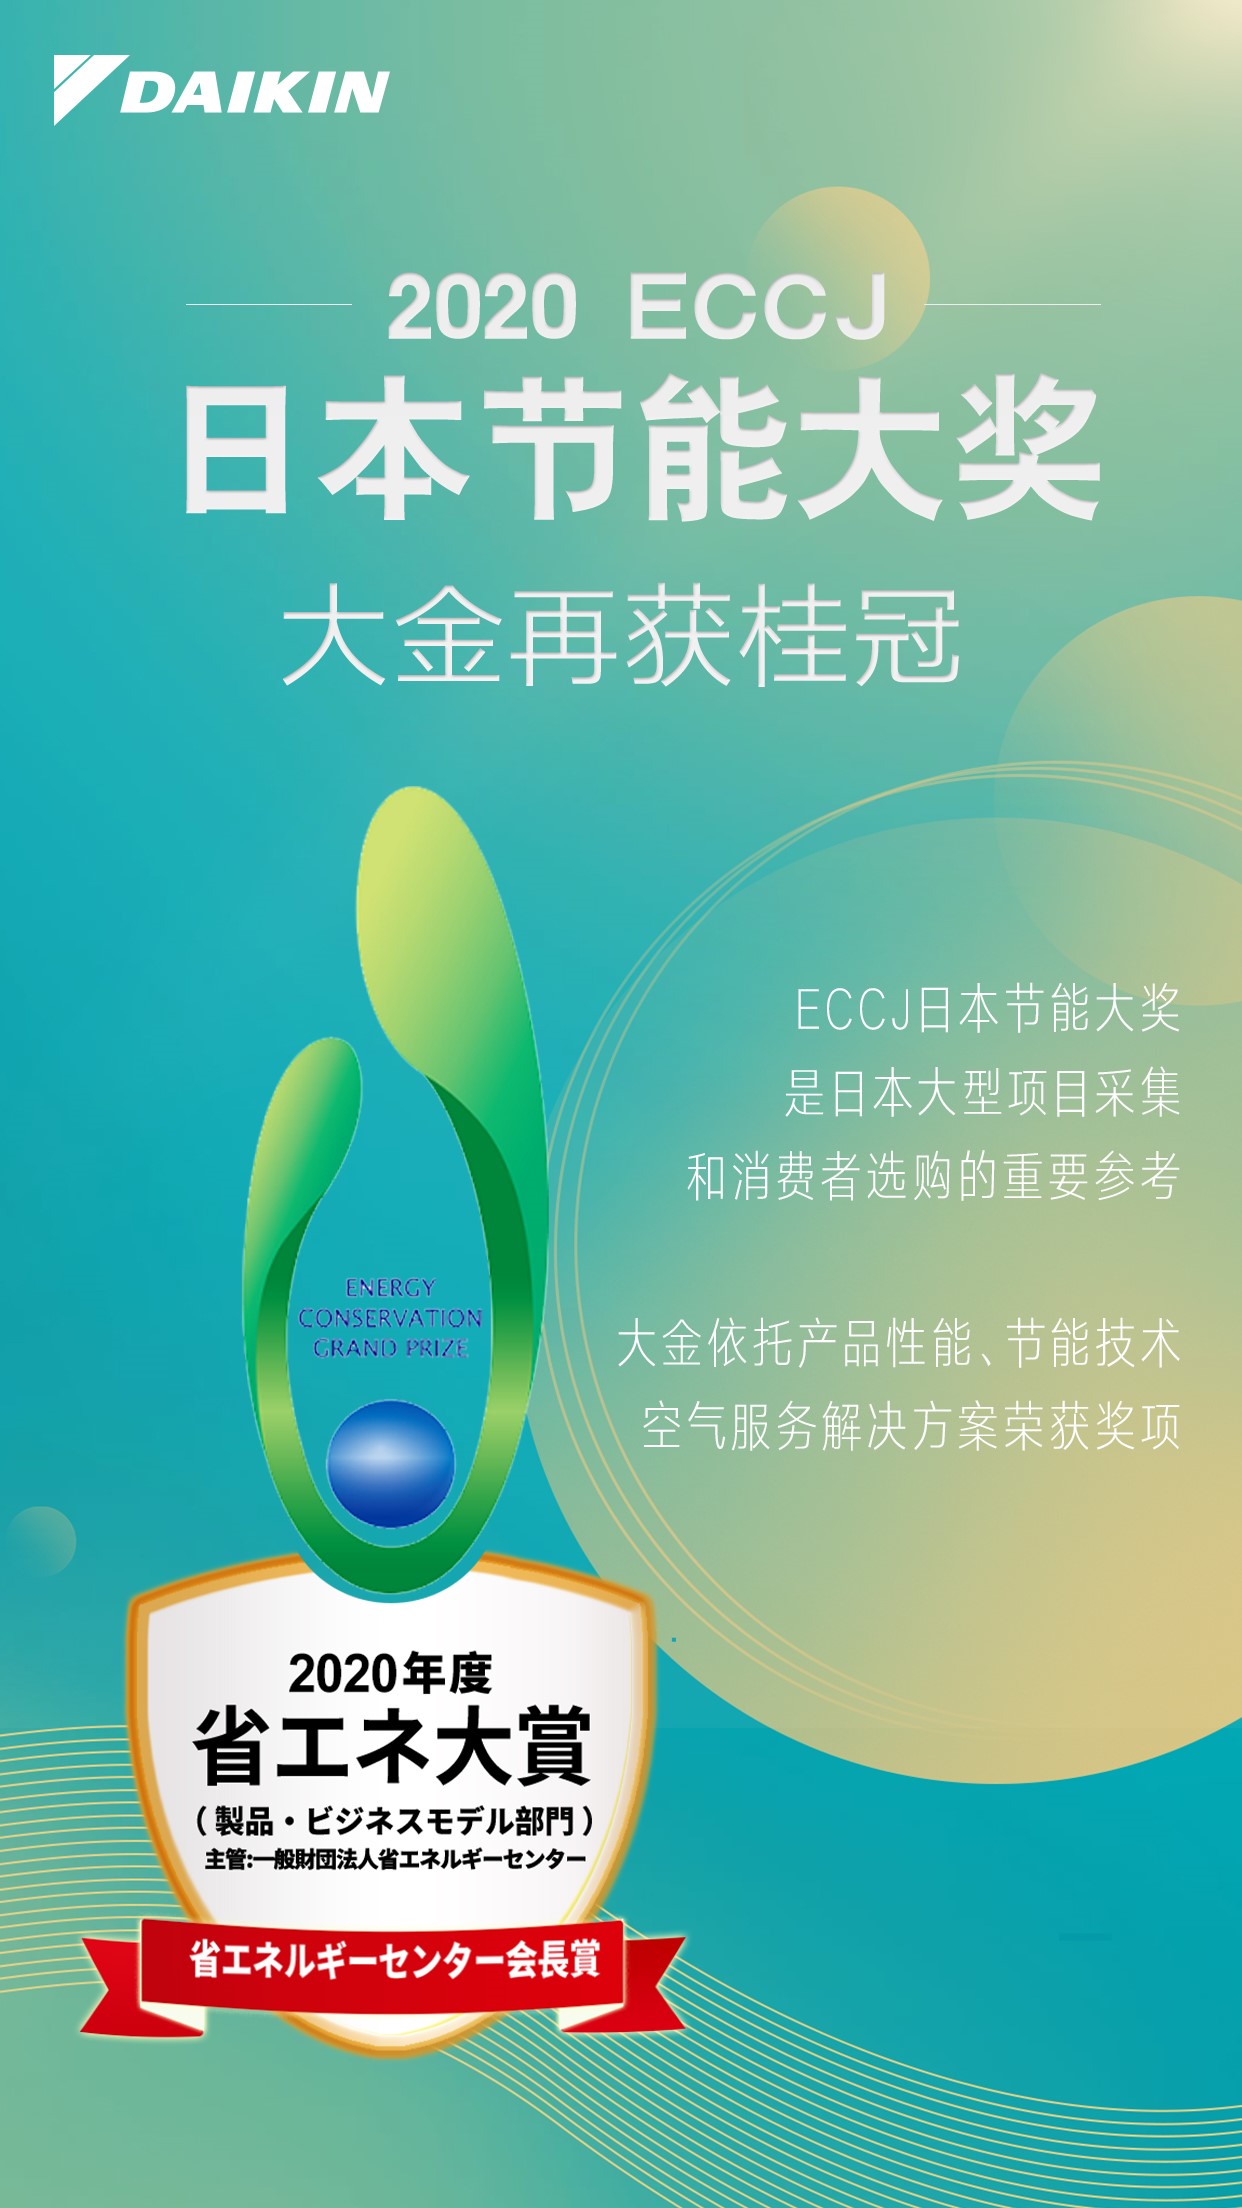 大金空调再获2020ECCJ日本节能大奖，以节能方案共创环境价值！